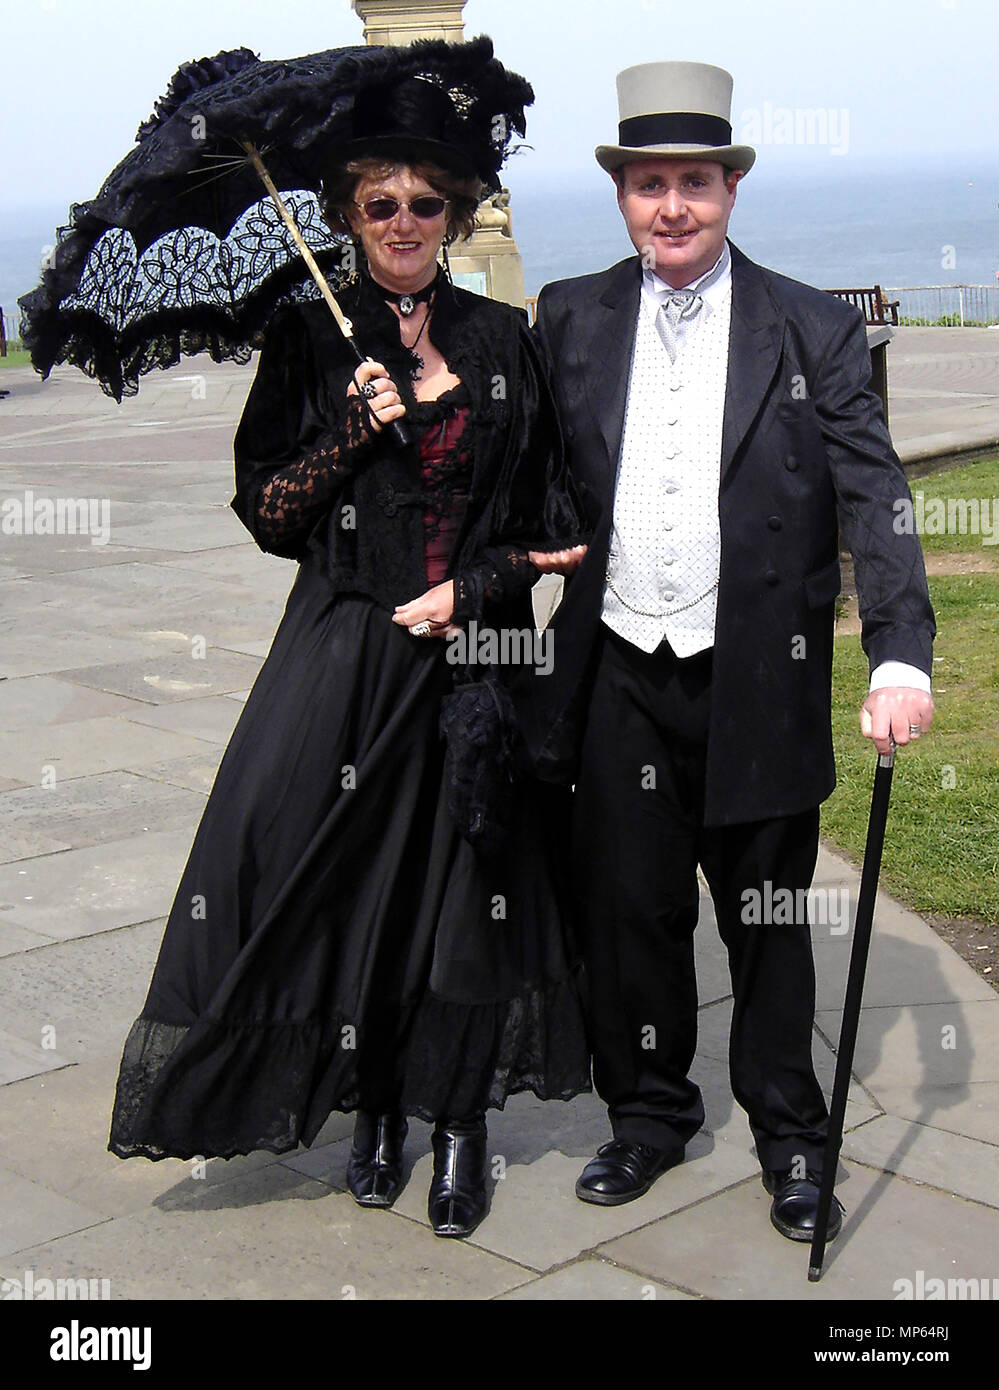 Eleganza - non tutti i Goti sono stranamente vestito durante l'annuale festival gotico a Whitby, Yorkshire Regno Unito. Foto Stock